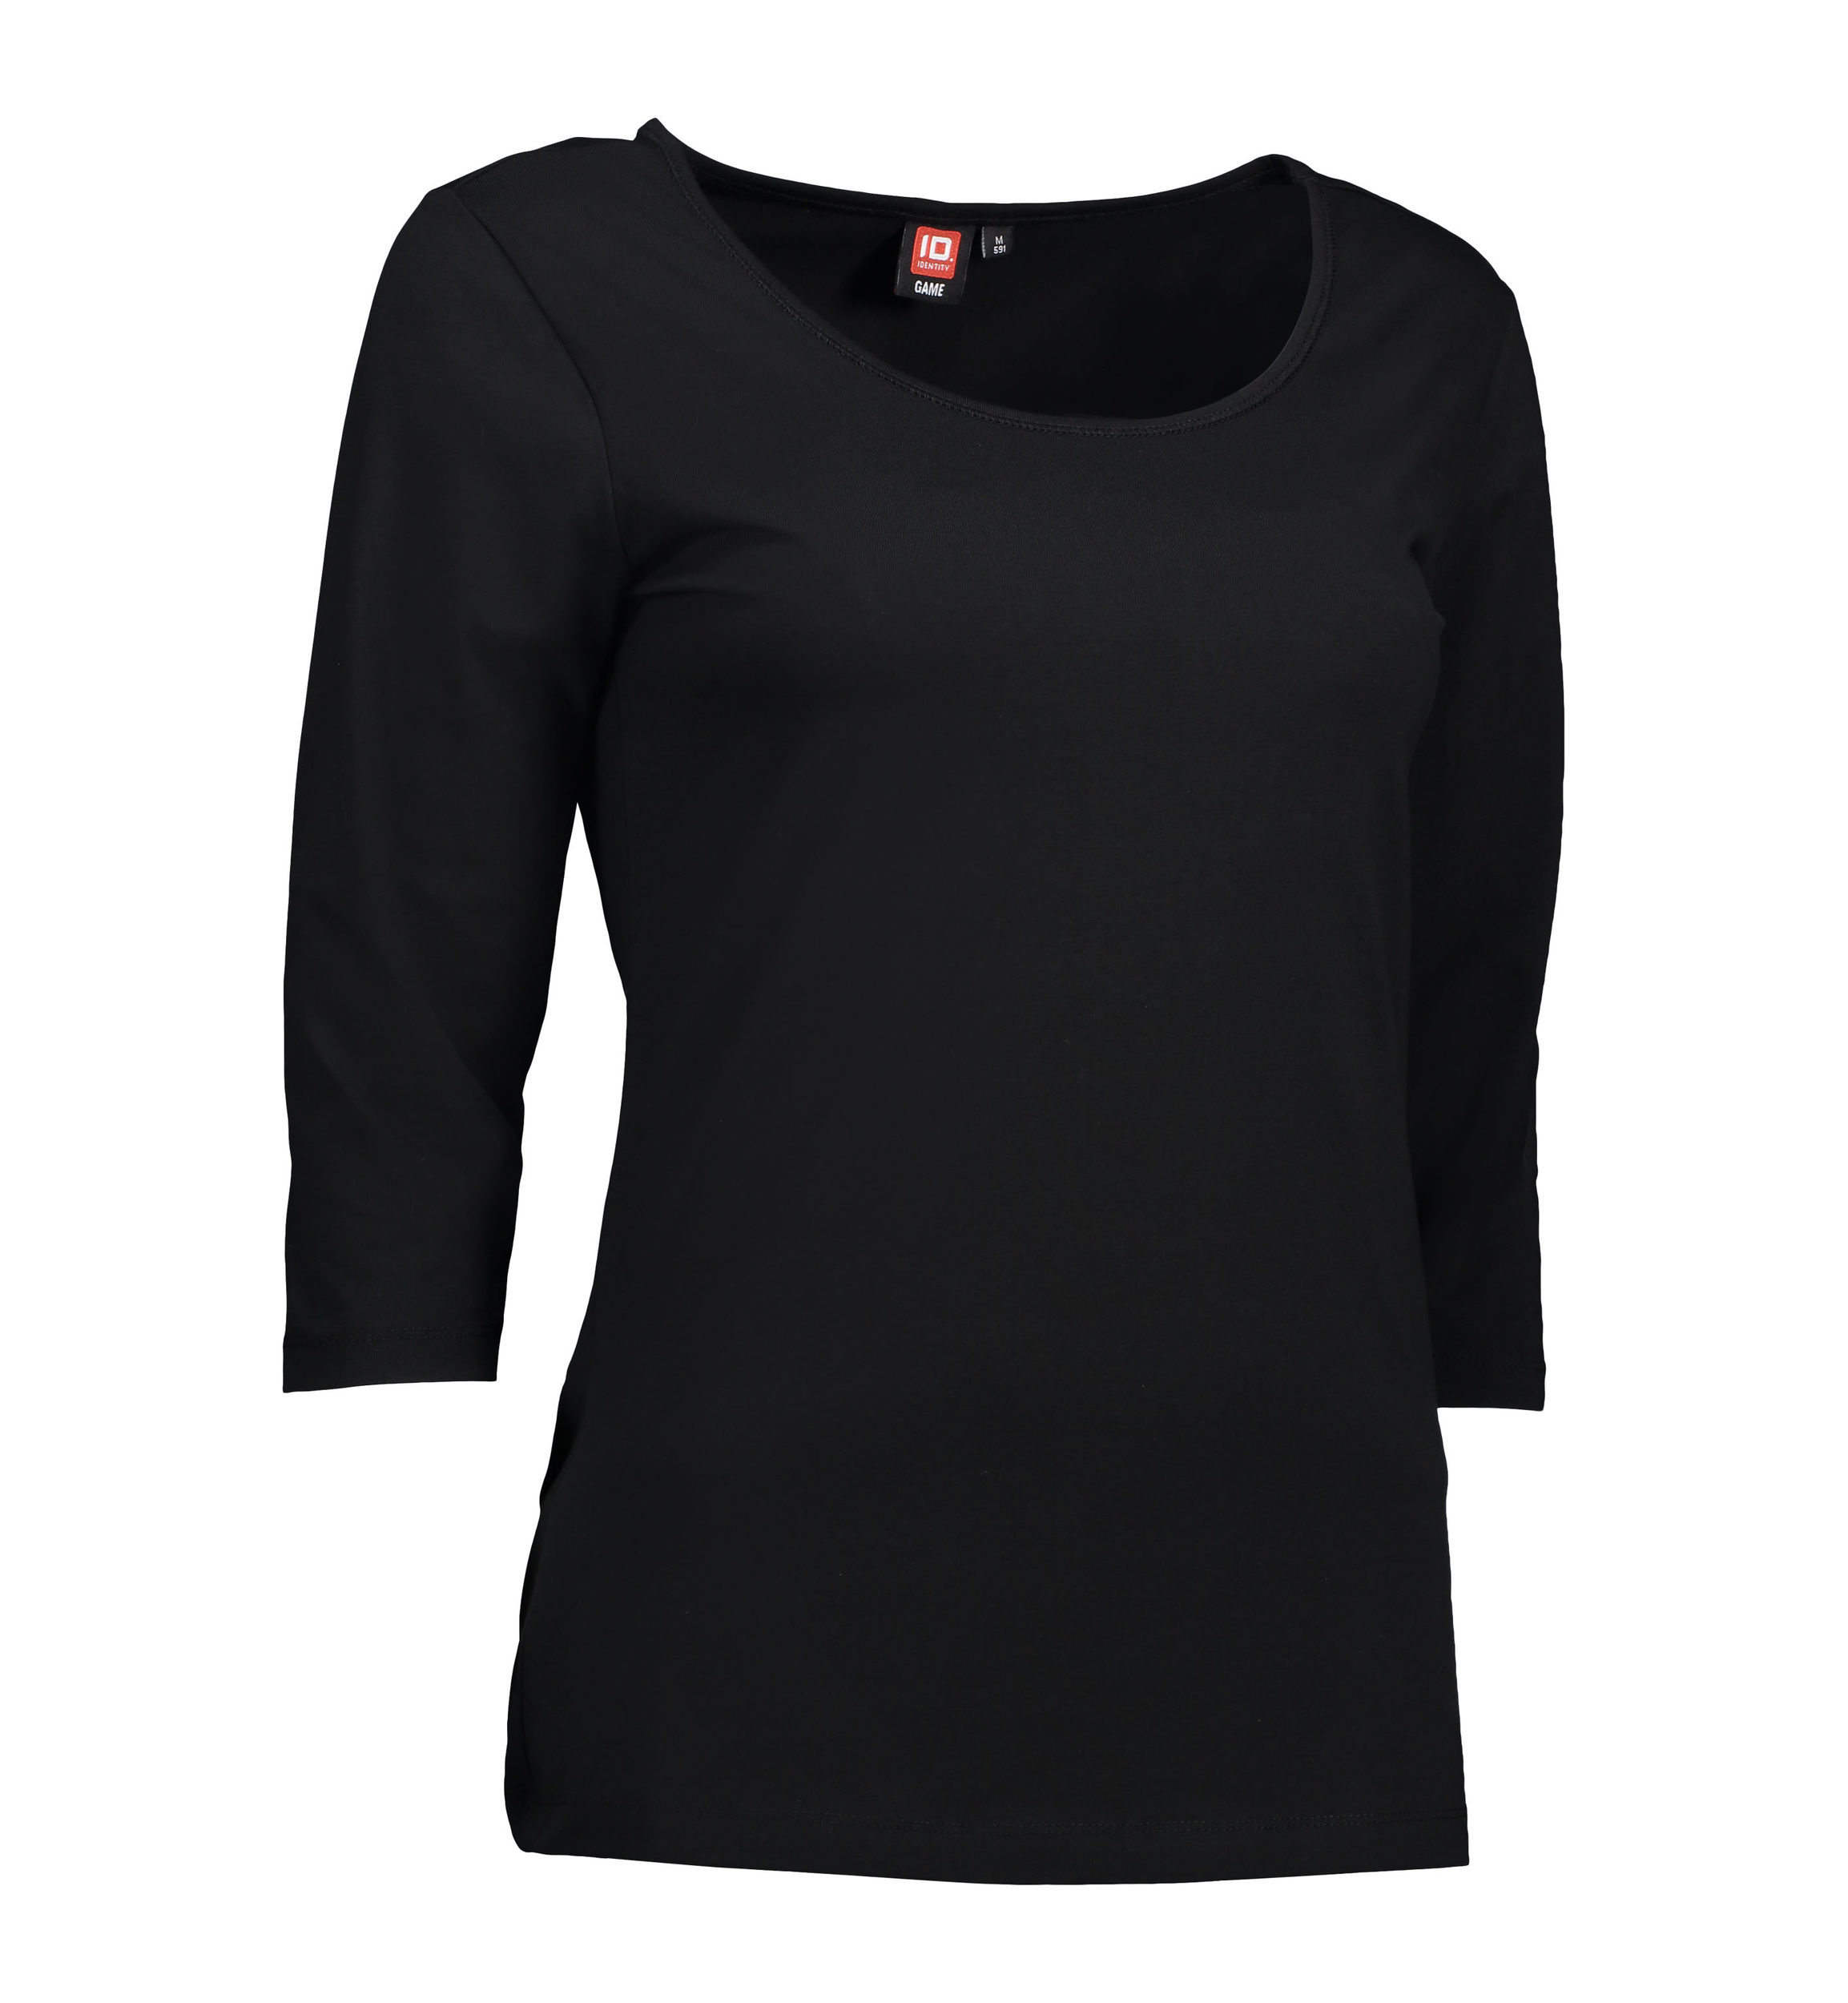 Se 3/4-ærmet dame t-shirt i sort - 3XL hos Sygeplejebutikken.dk